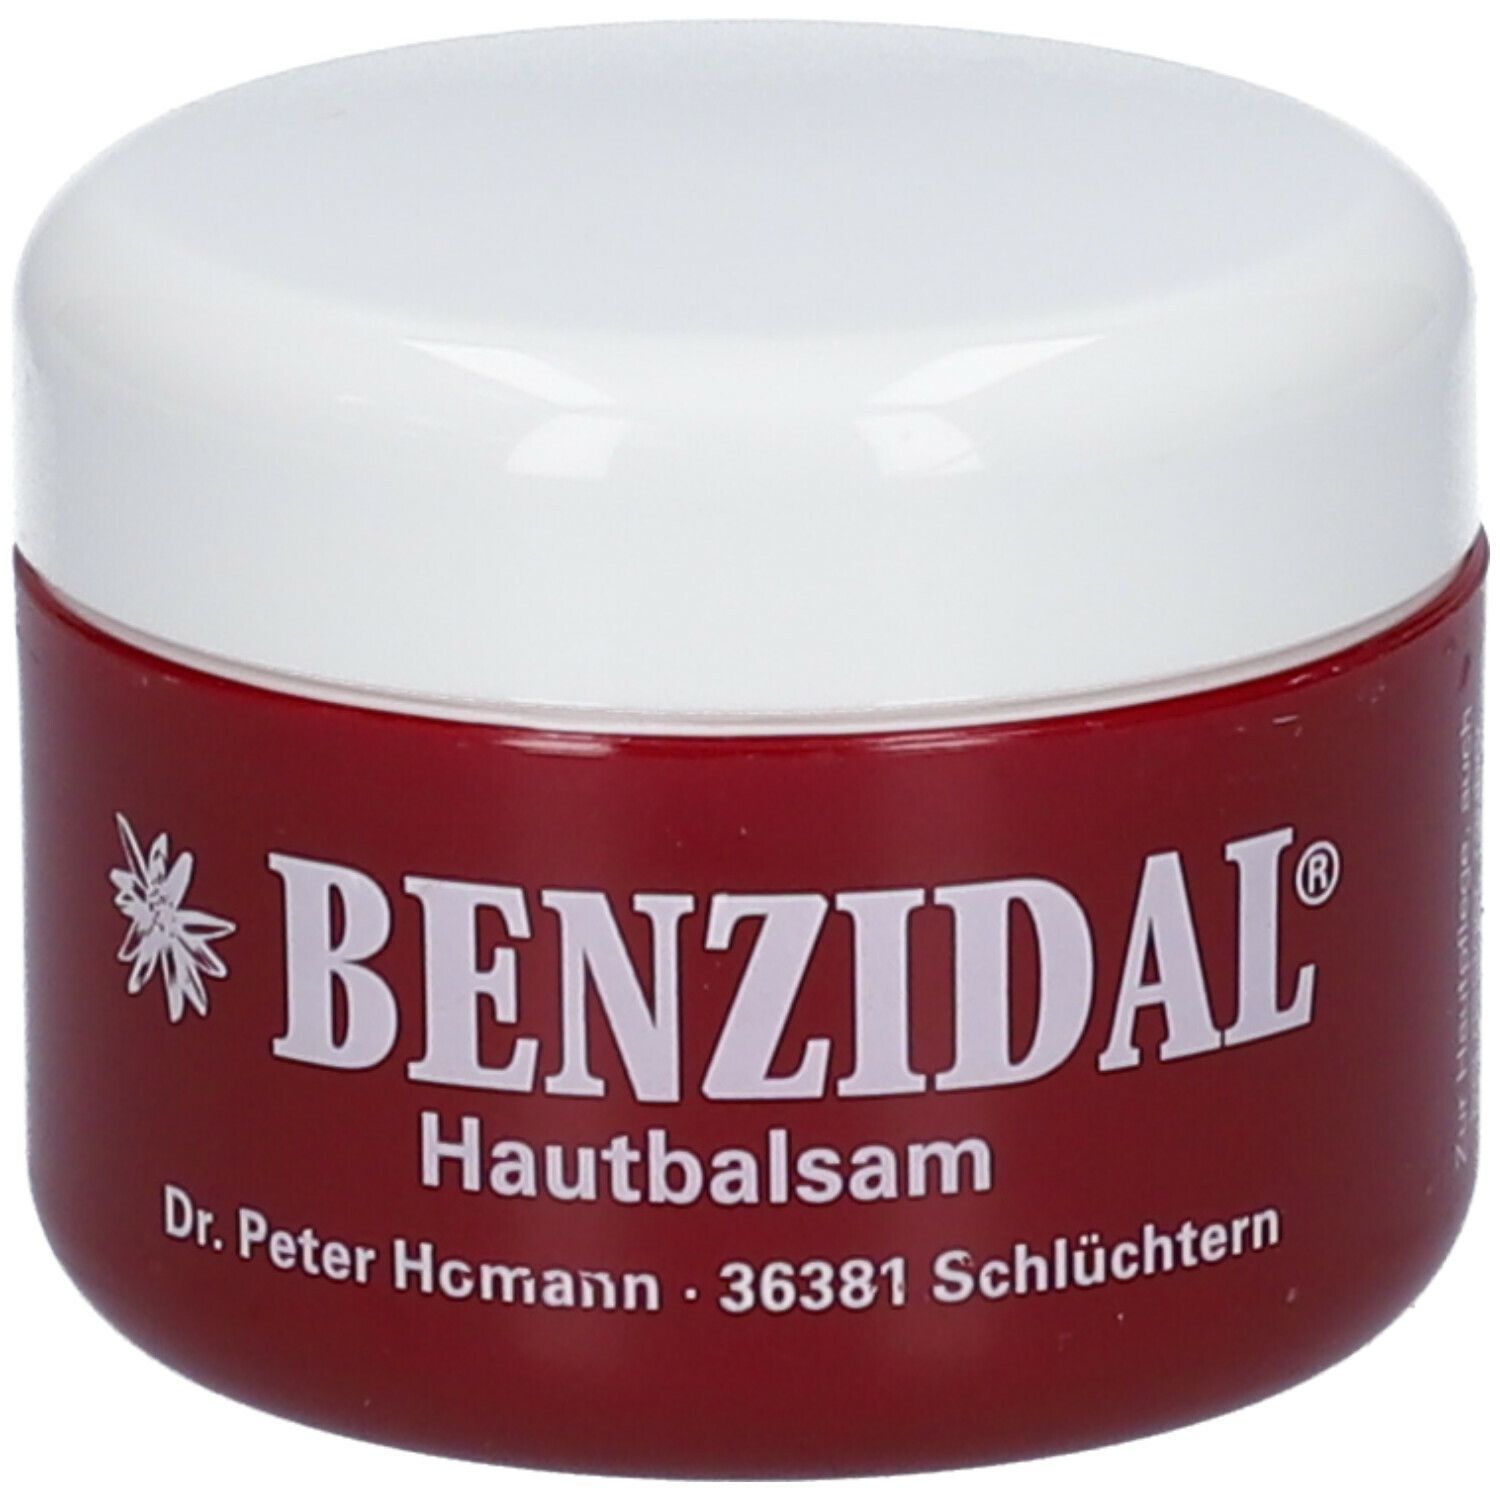 Image of Benzidal® Hautbalsam